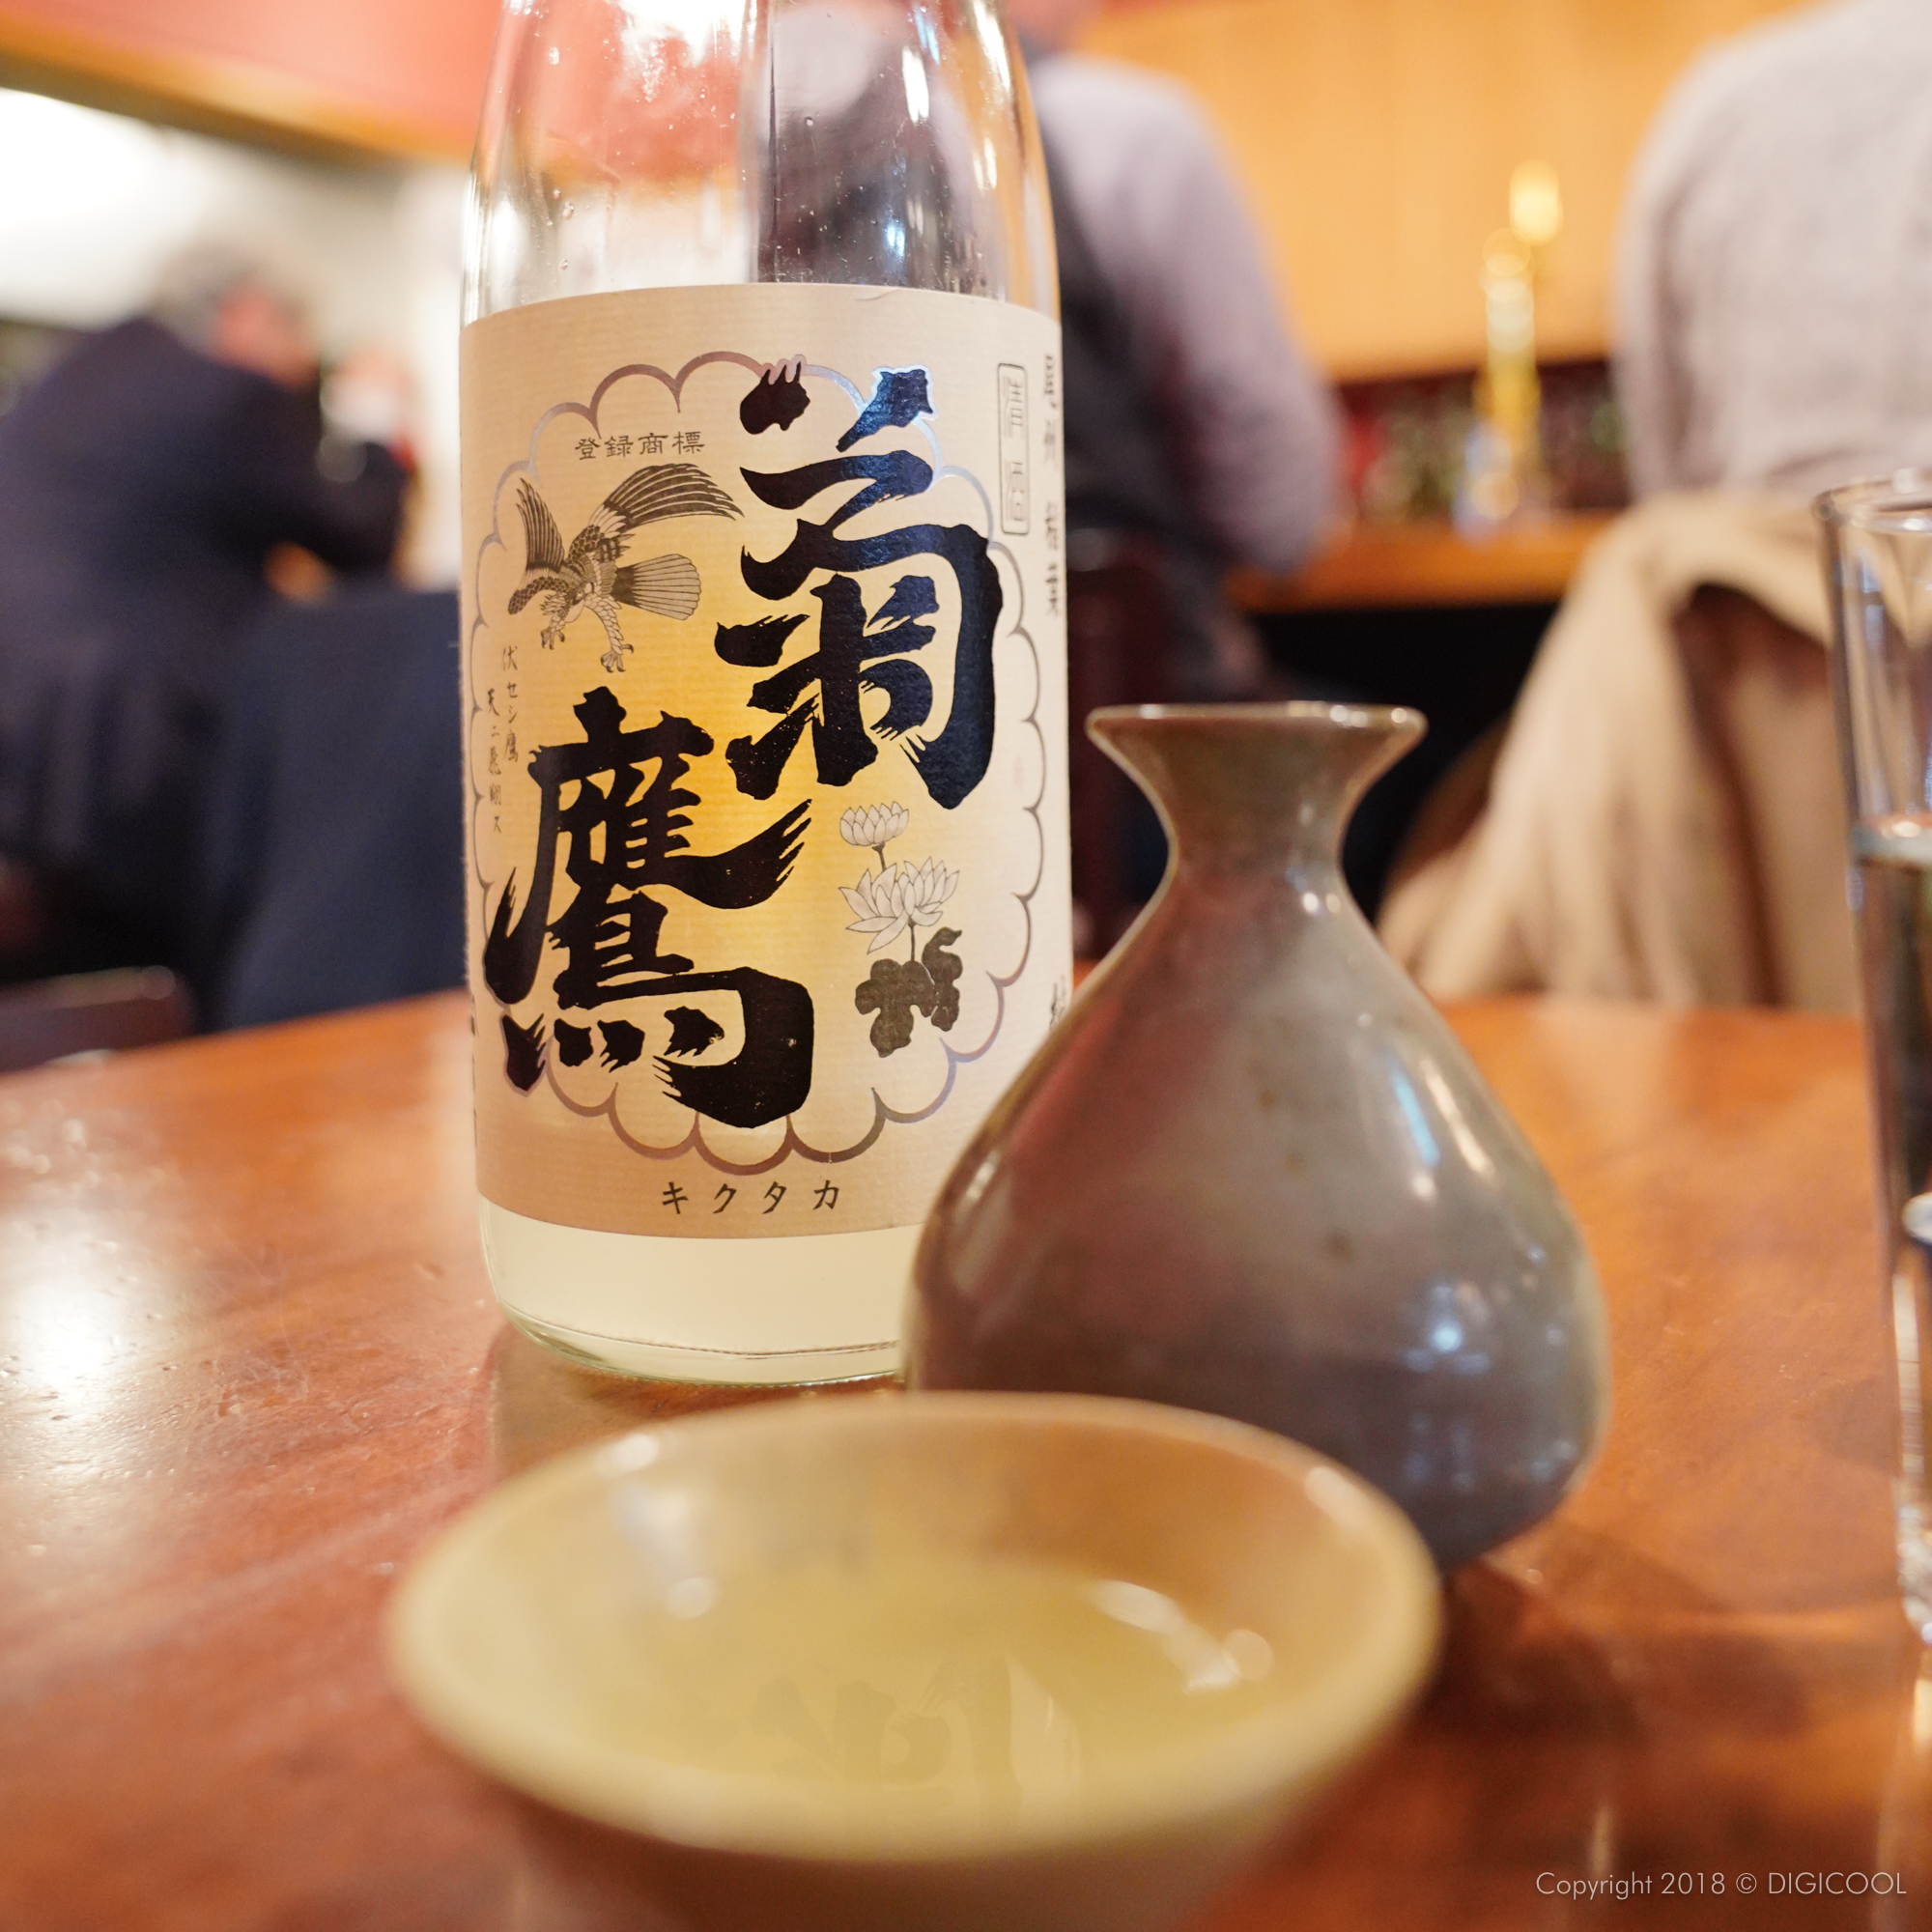 東京都武蔵野市・三鷹の燗専門店「ひねもす」で燗酒の勉強をしてきました。